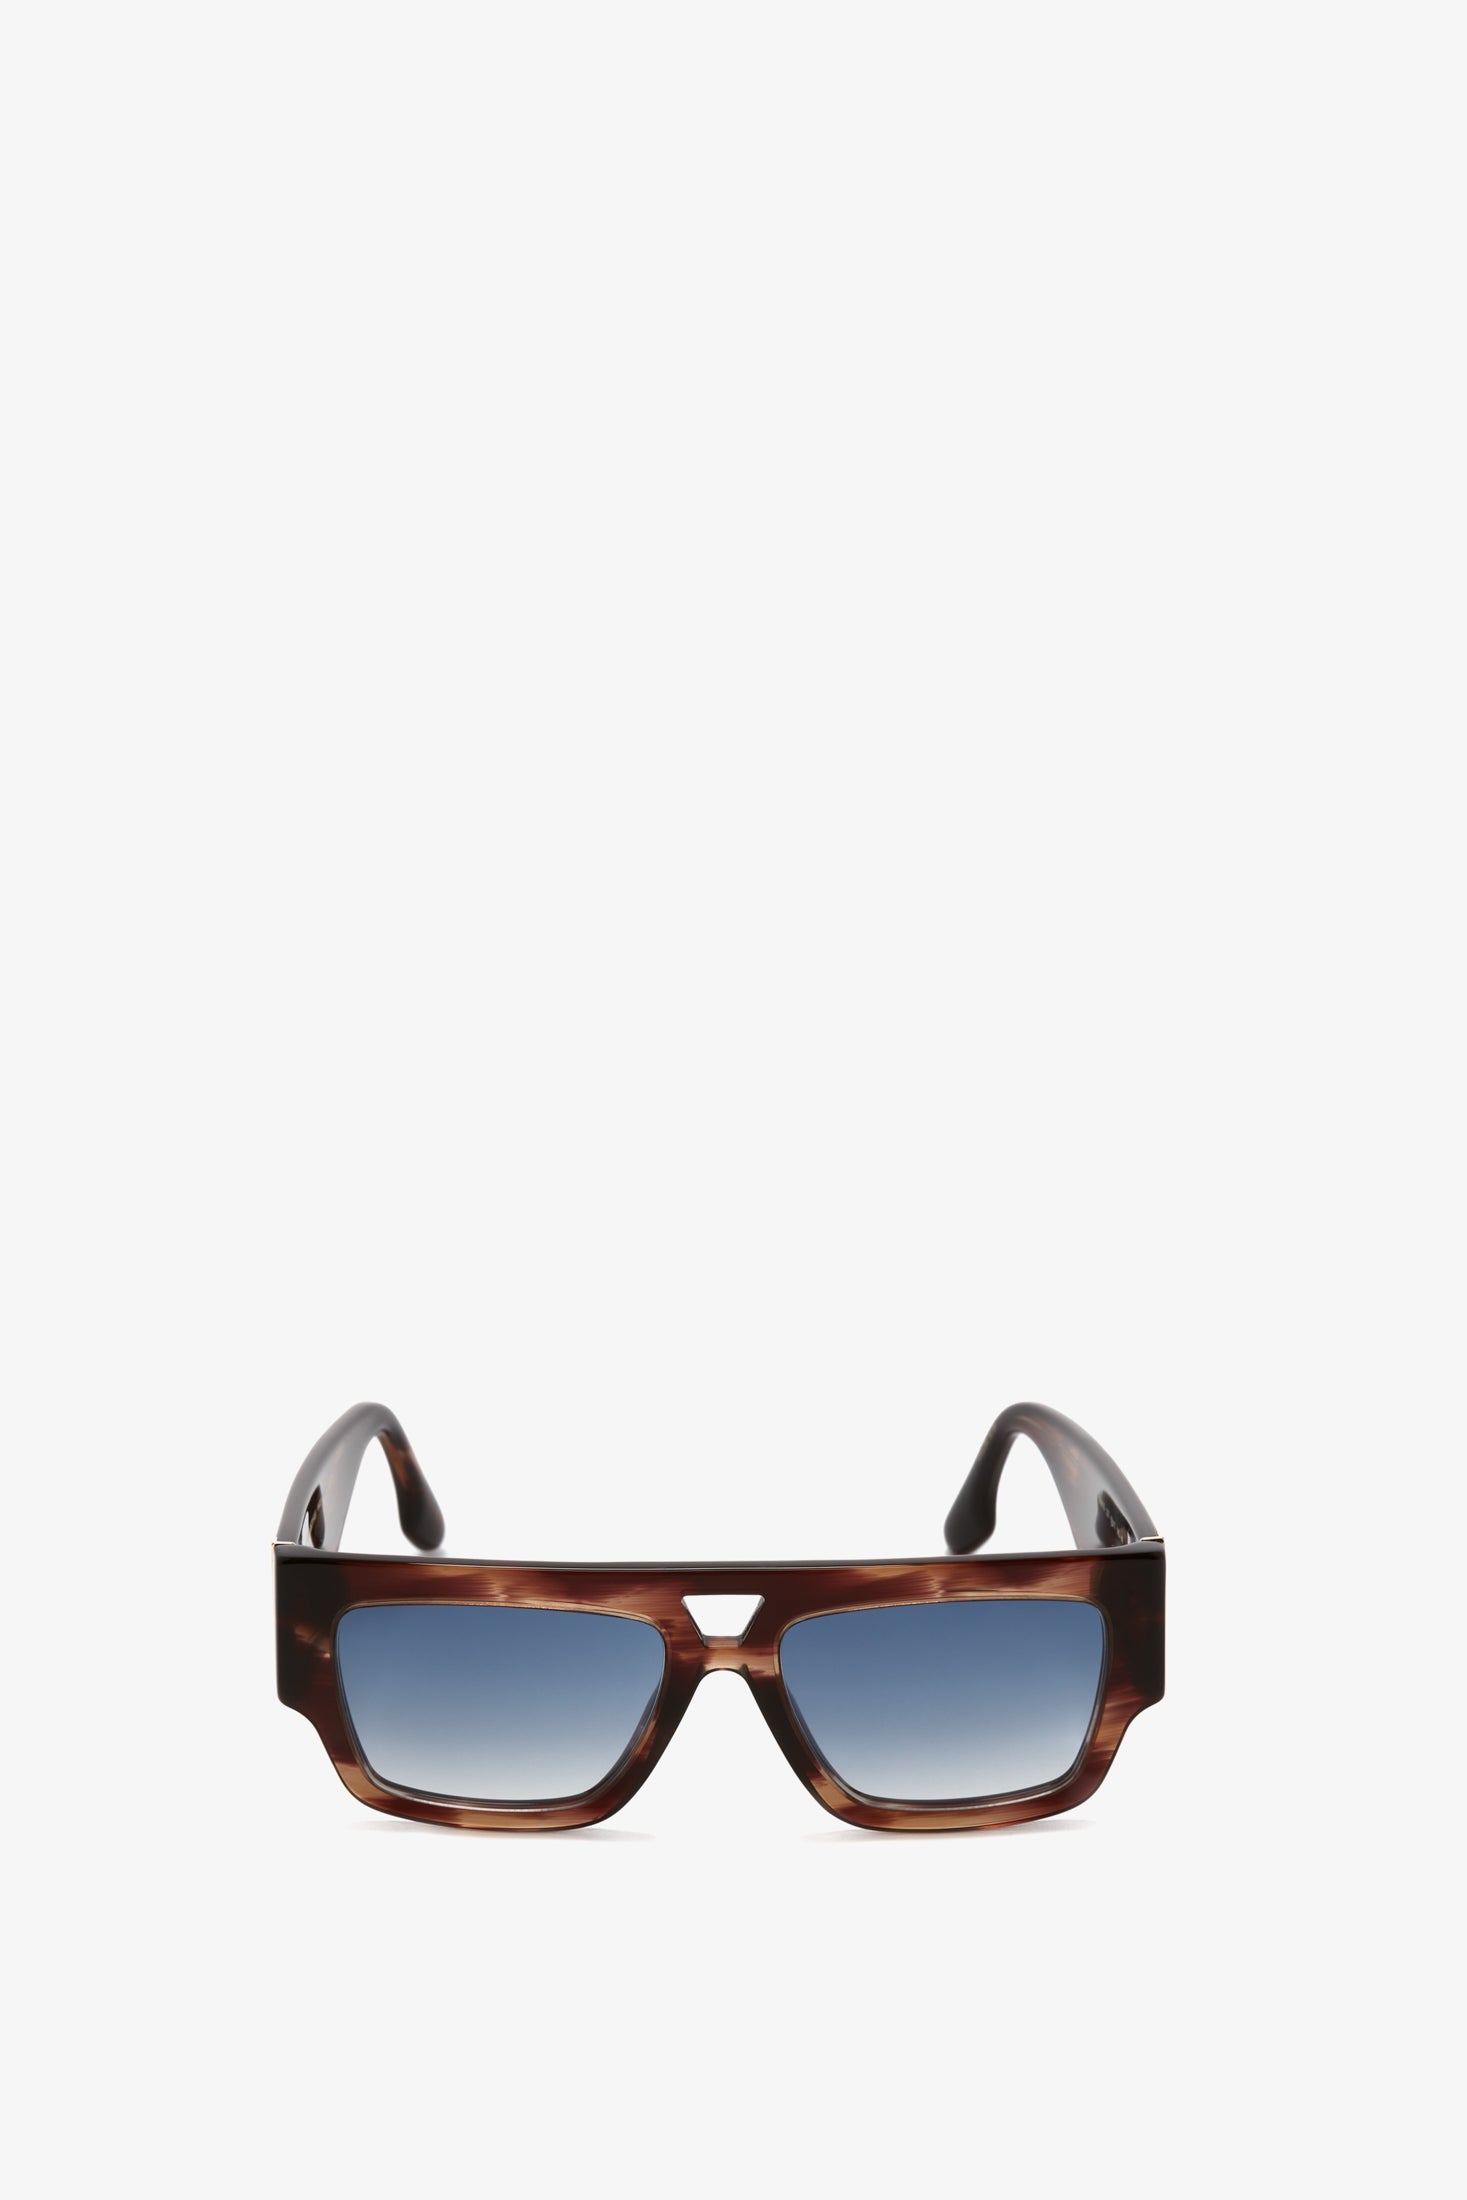 Buy Louis Vuitton Sunglasses Men Online In India -  India